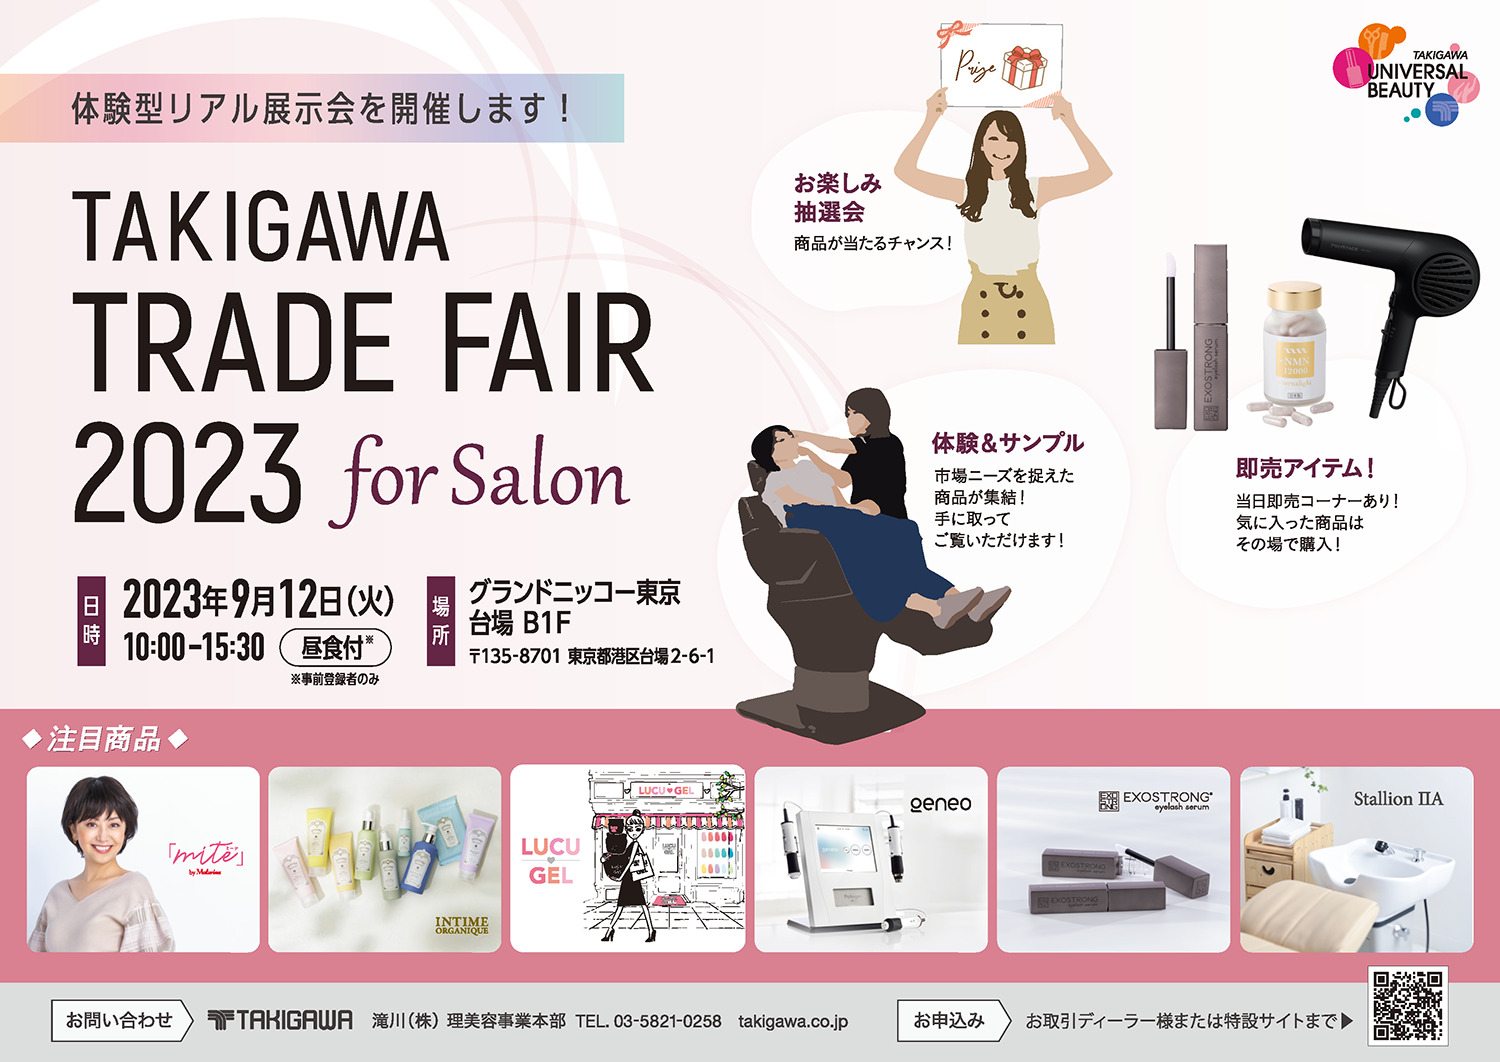 ユニバーサルビューティ商品を展示「TAKIGAWA TRADE FAIR 2023 for Salon」を 開催